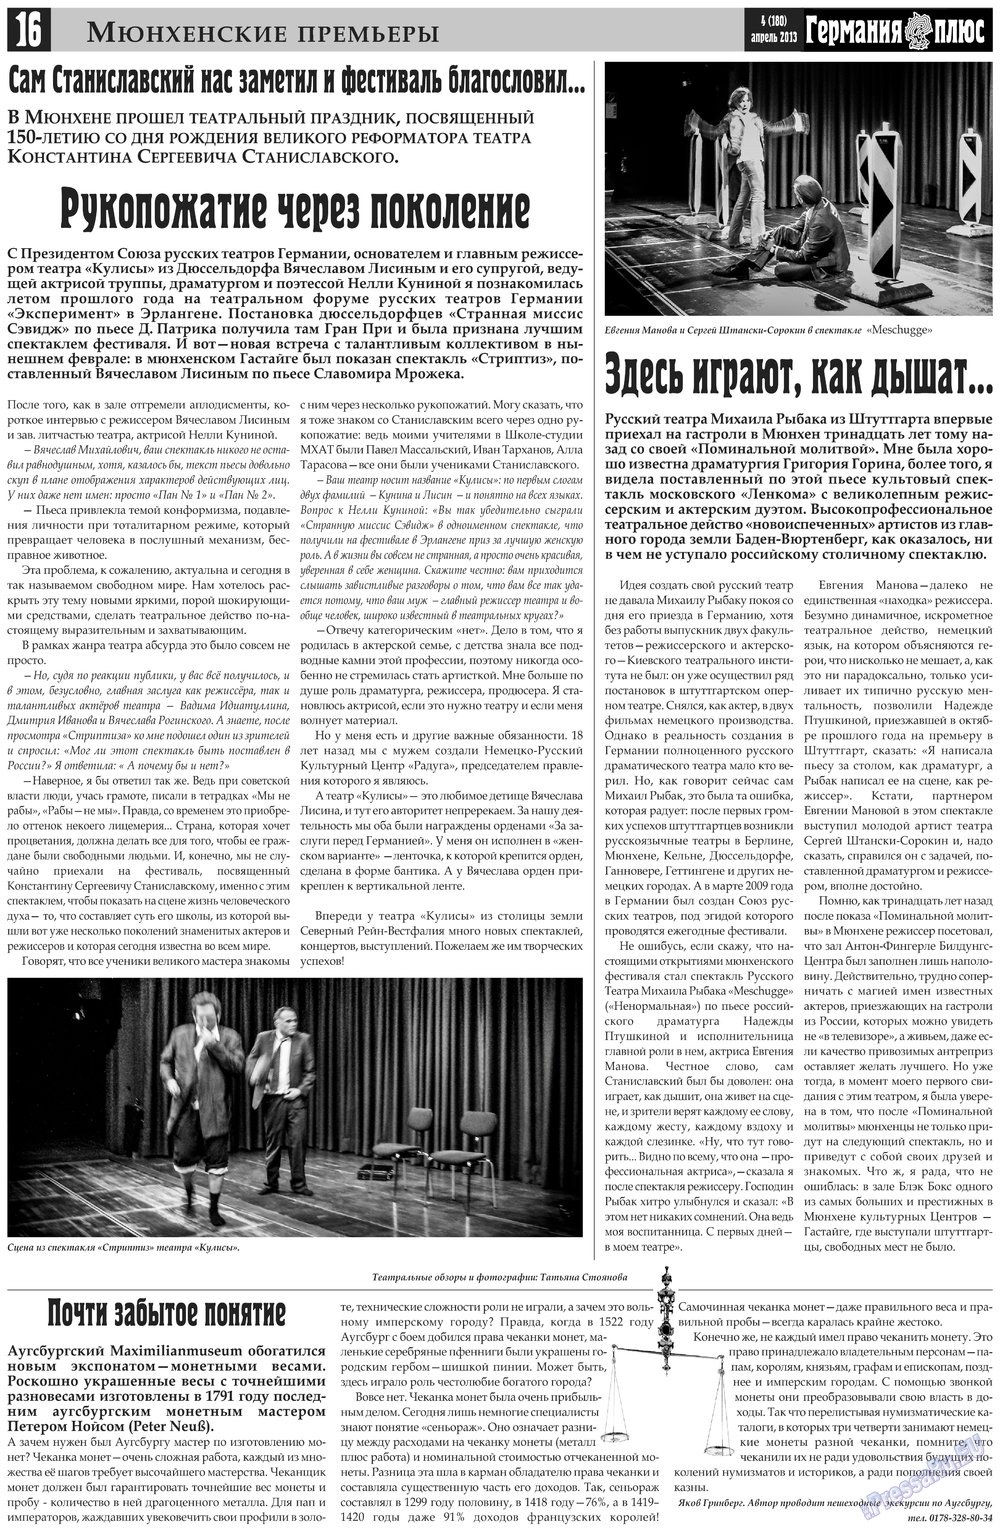 Германия плюс (газета). 2013 год, номер 4, стр. 16